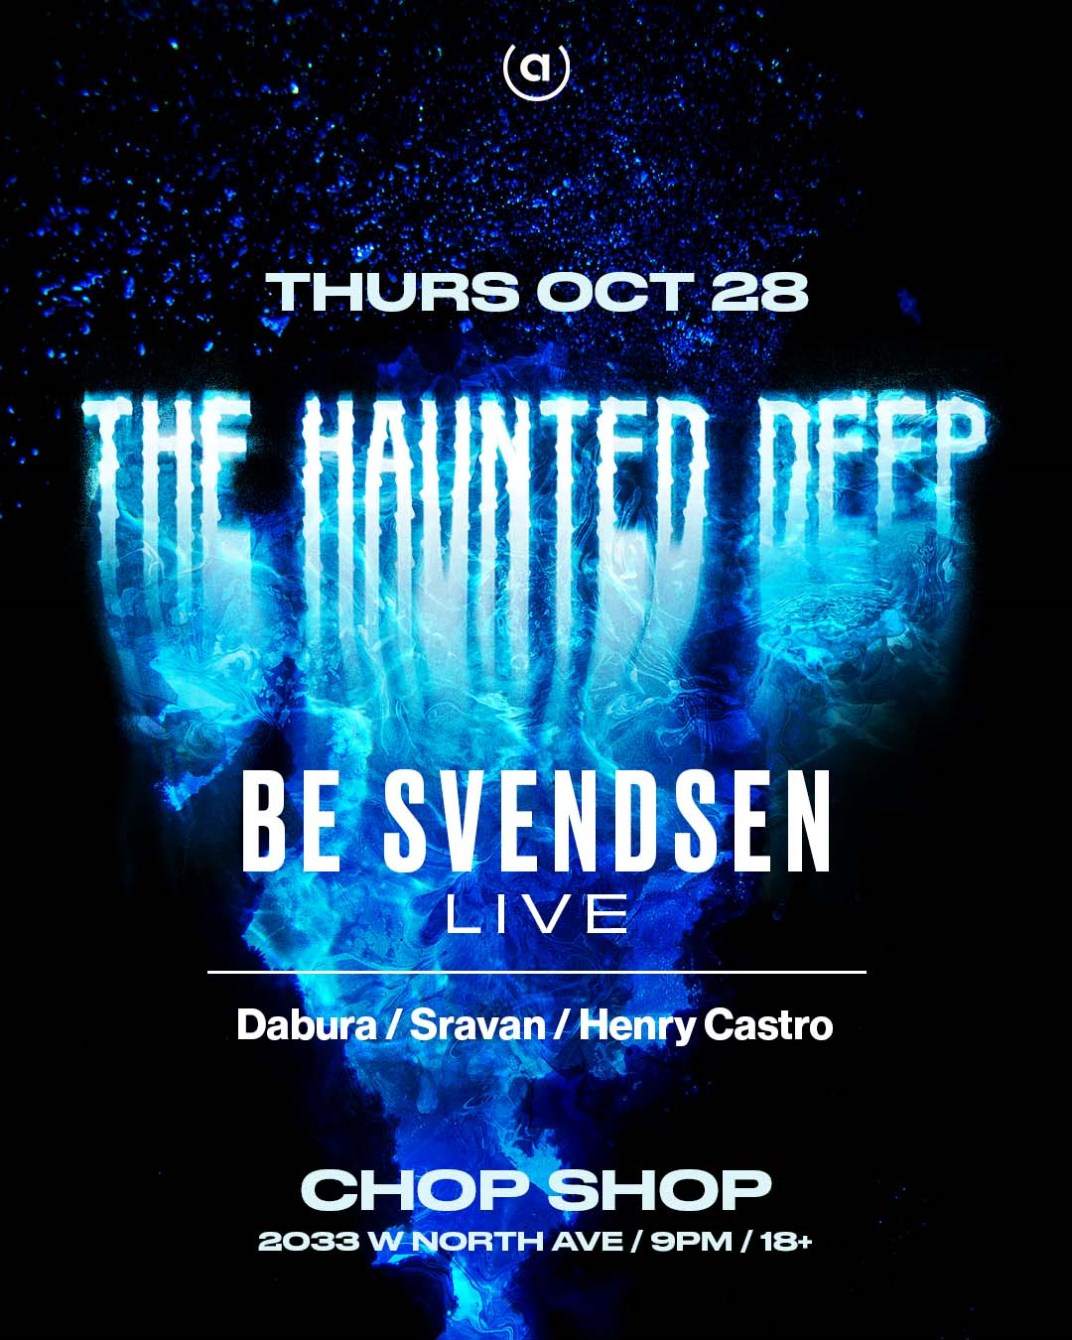 The Haunted Deep: Be Svendsen (Live) at Chop Shop - フライヤー表